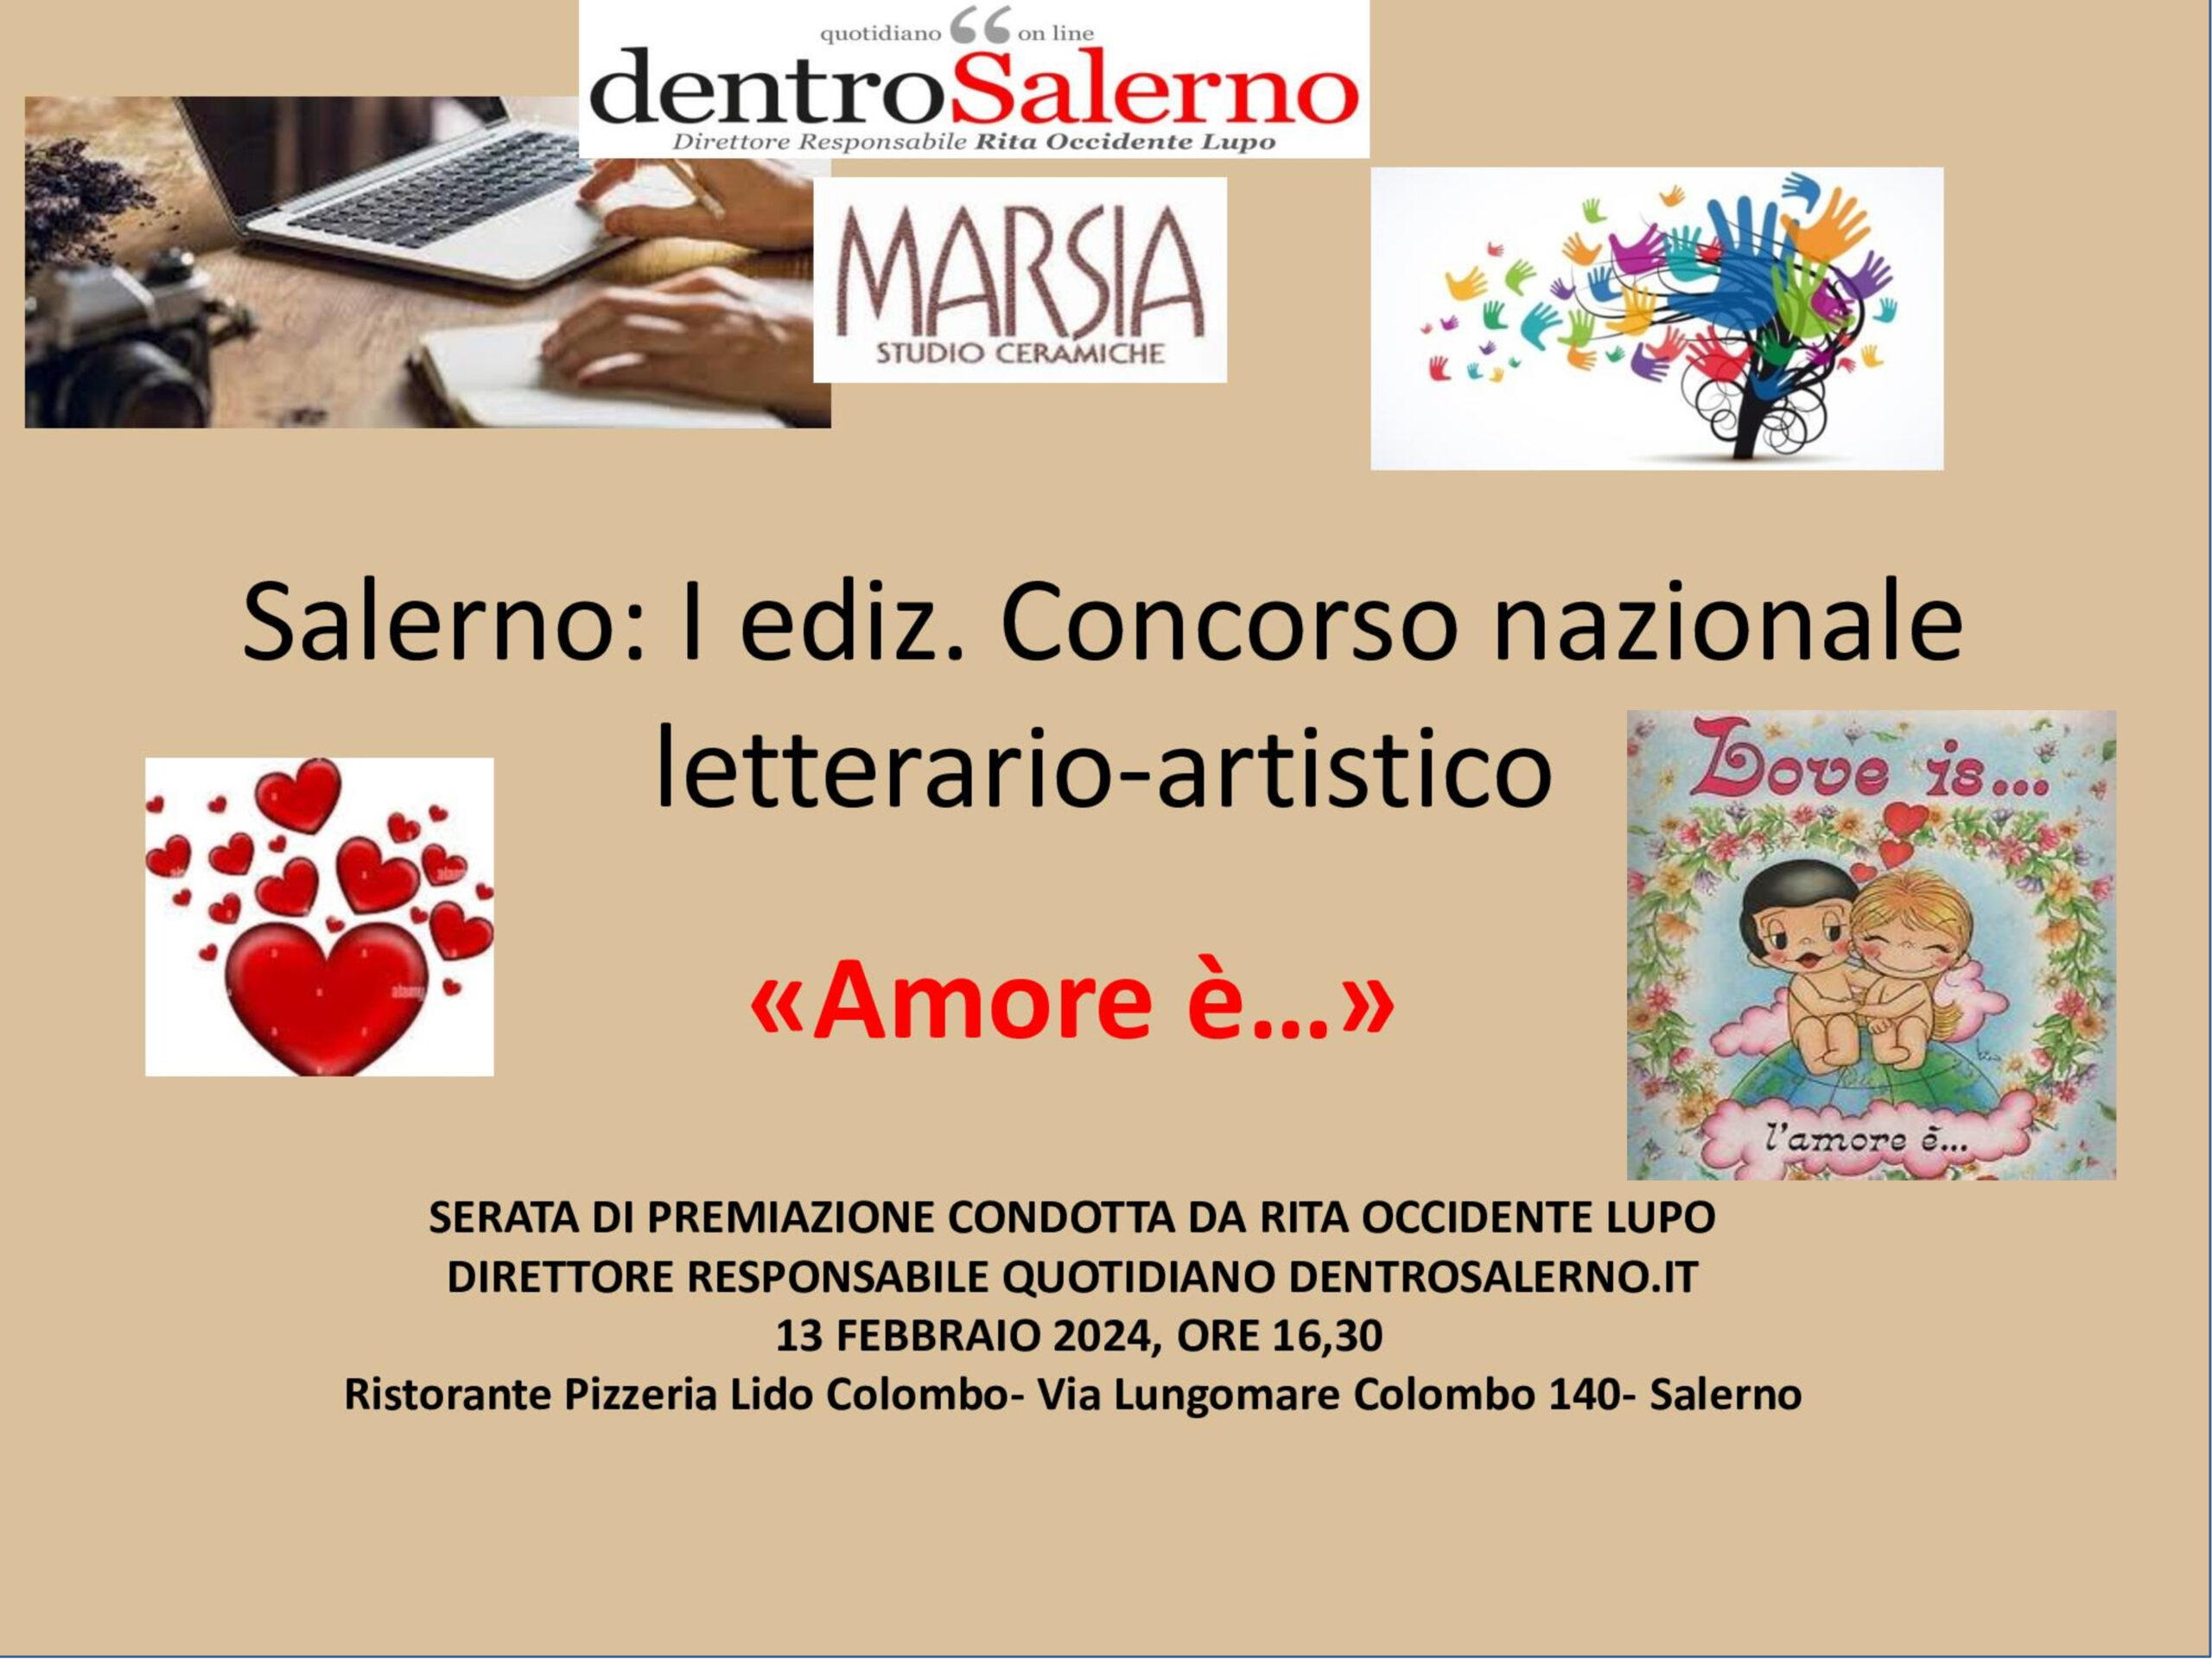 Salerno: I ediz. Concorso nazionale letterario-artistico “Amore é…”